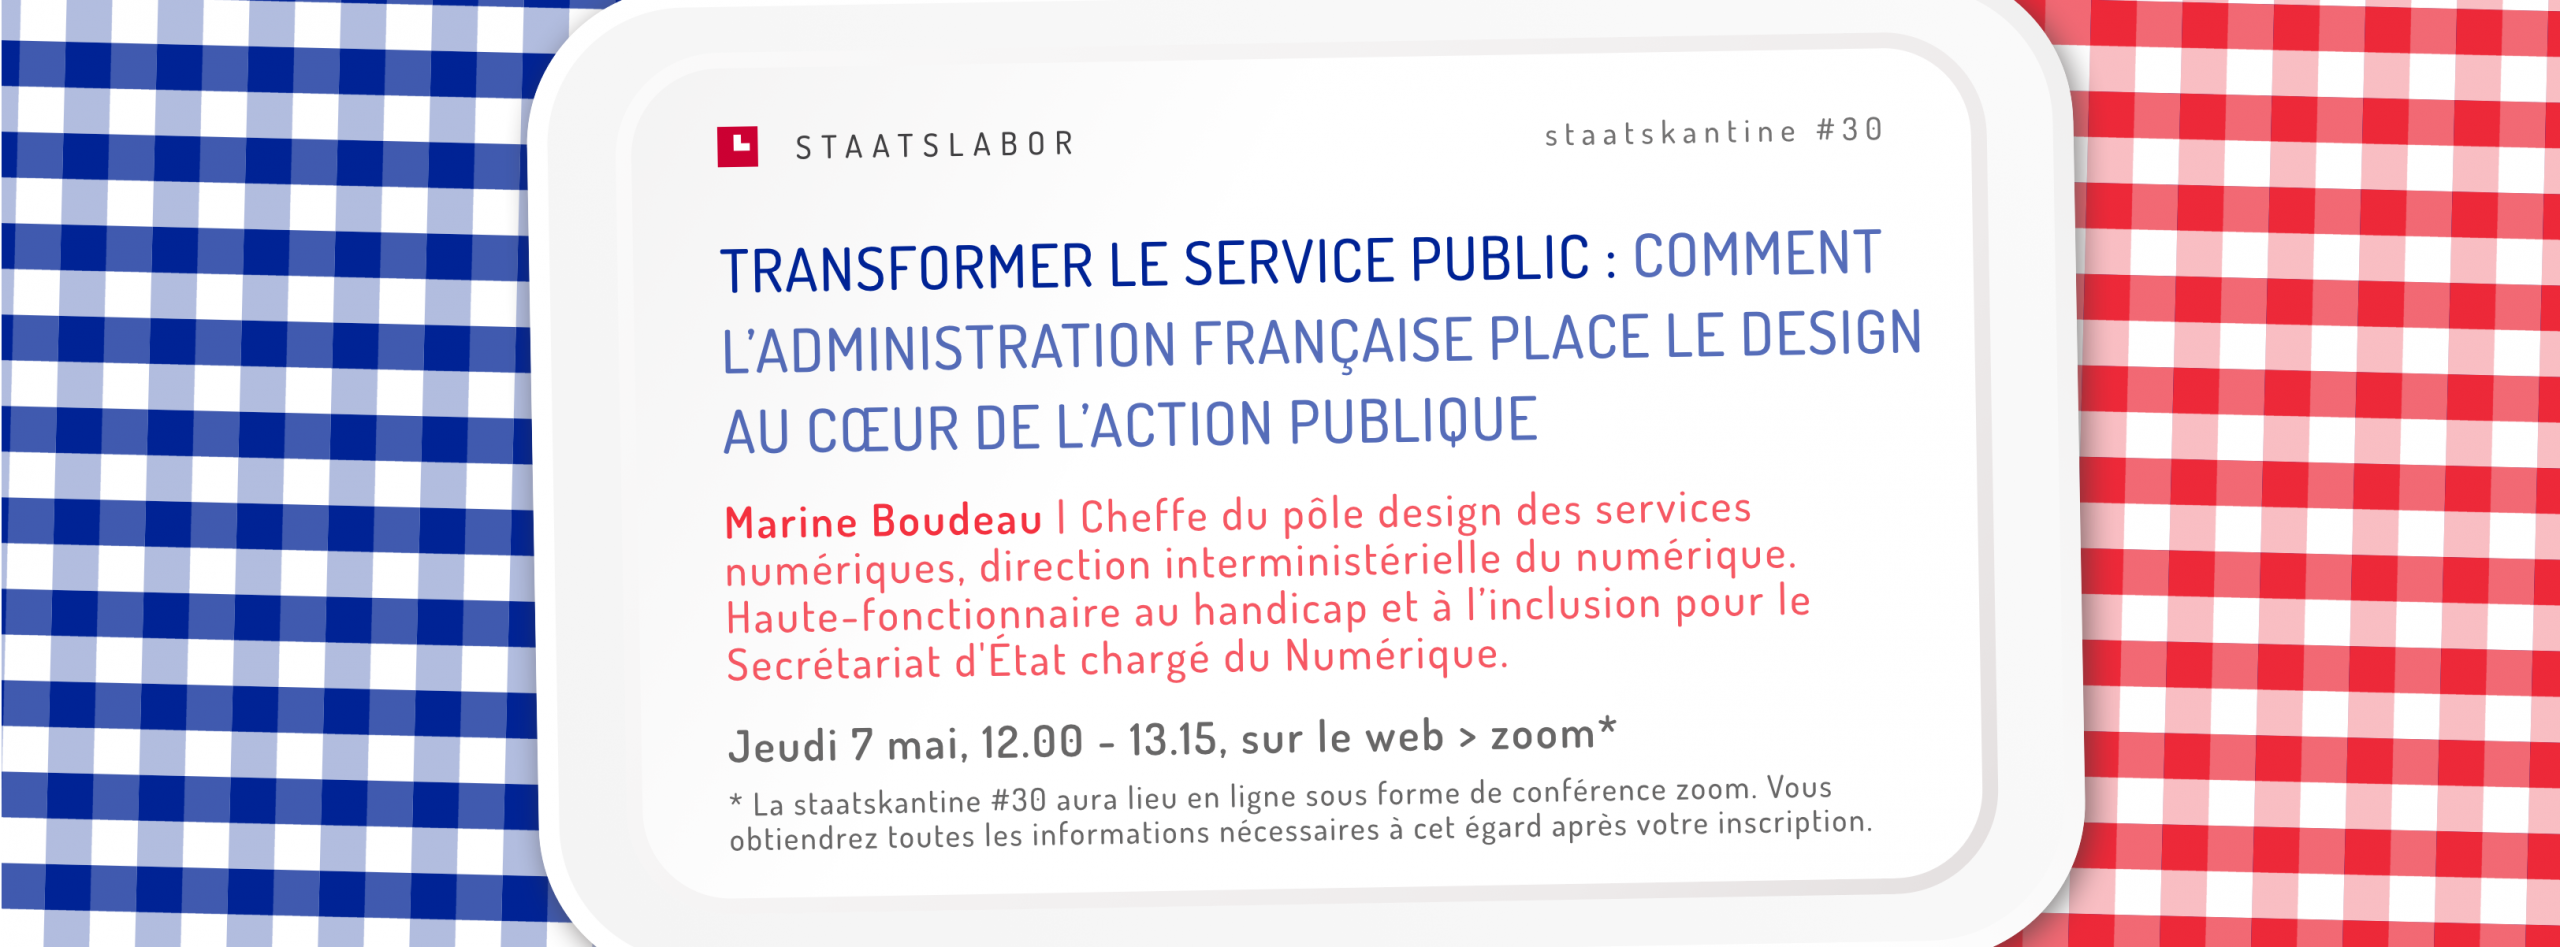 Flyer staatskantine #30 Transformer le service public: comment l'administration française place le design au cœur de l'action publique